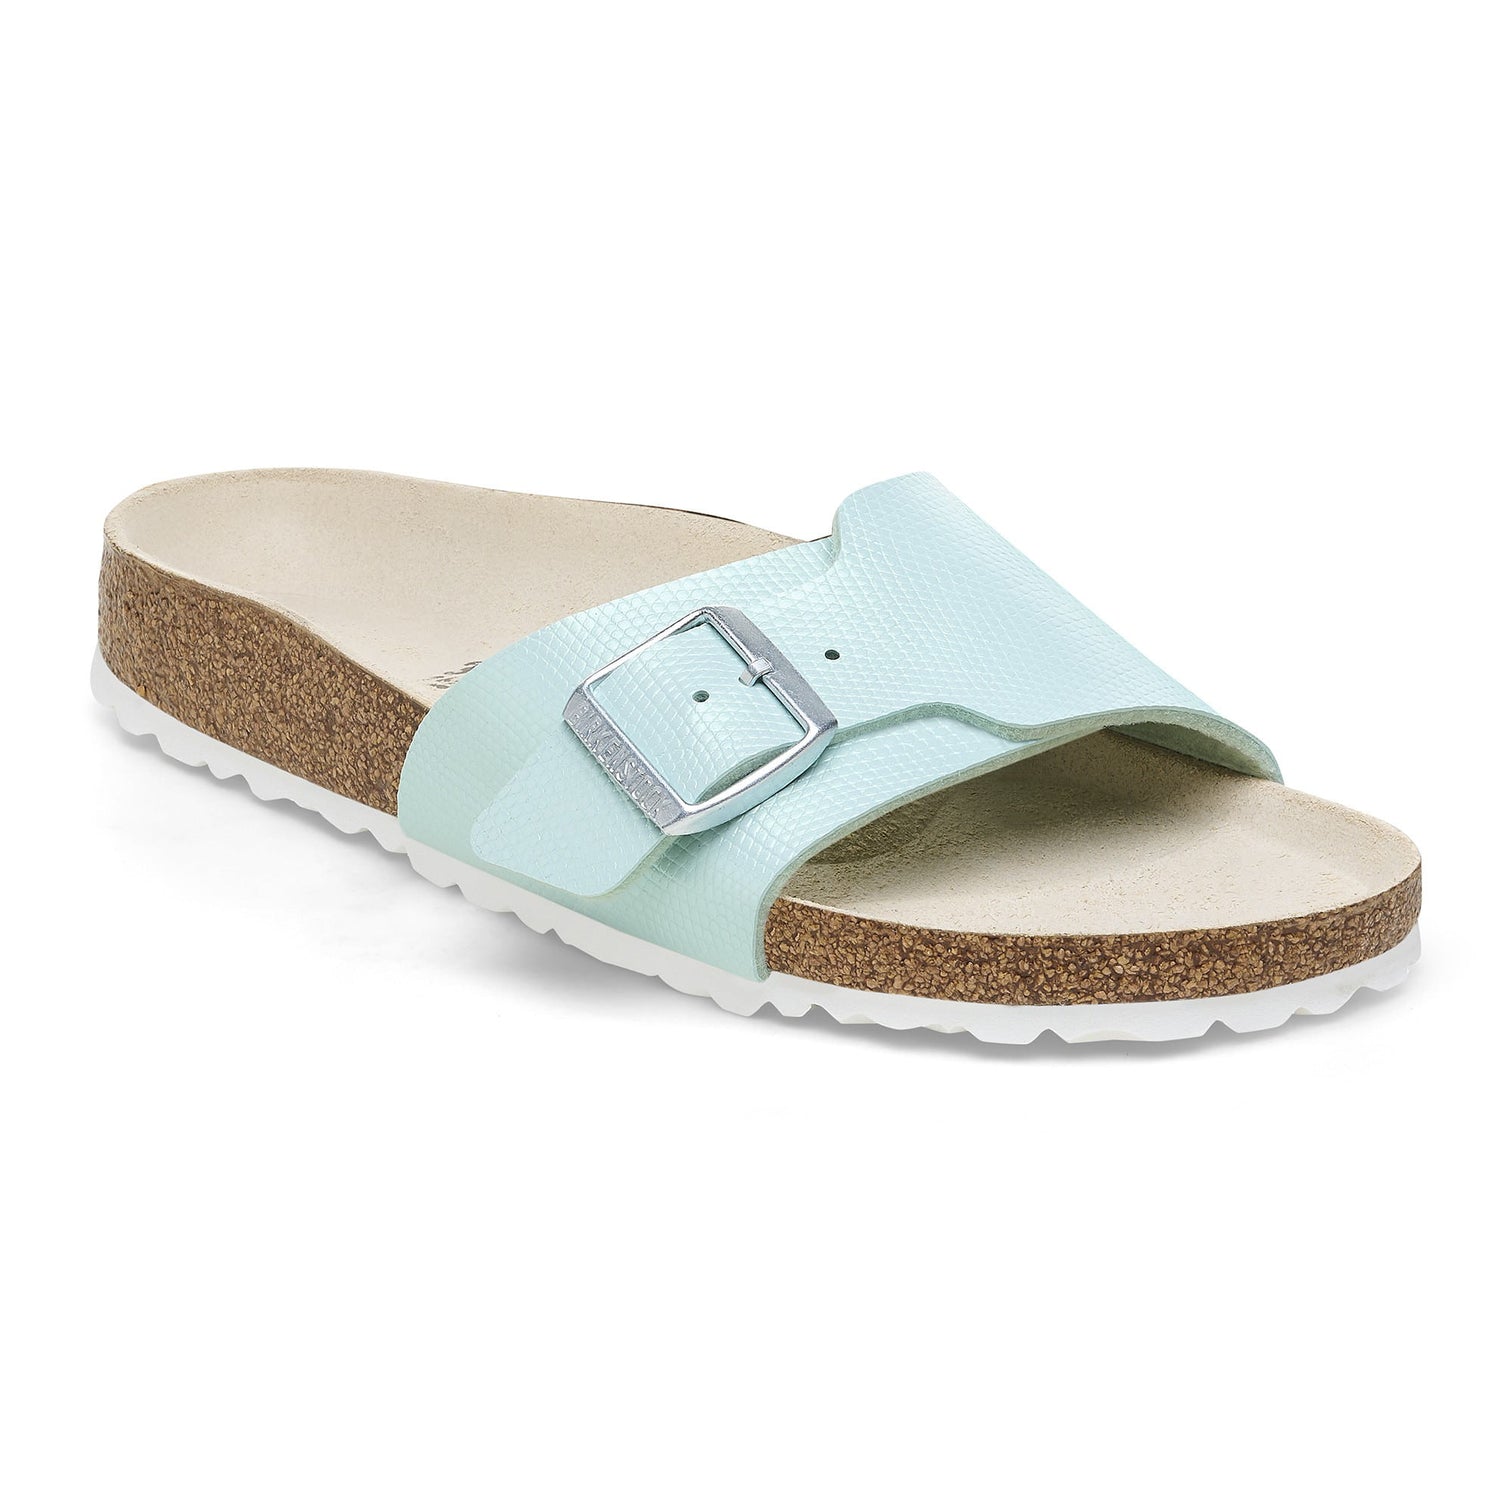 Shop Spring Summer Shoes & Sandals Online | BIRKENSTOCK